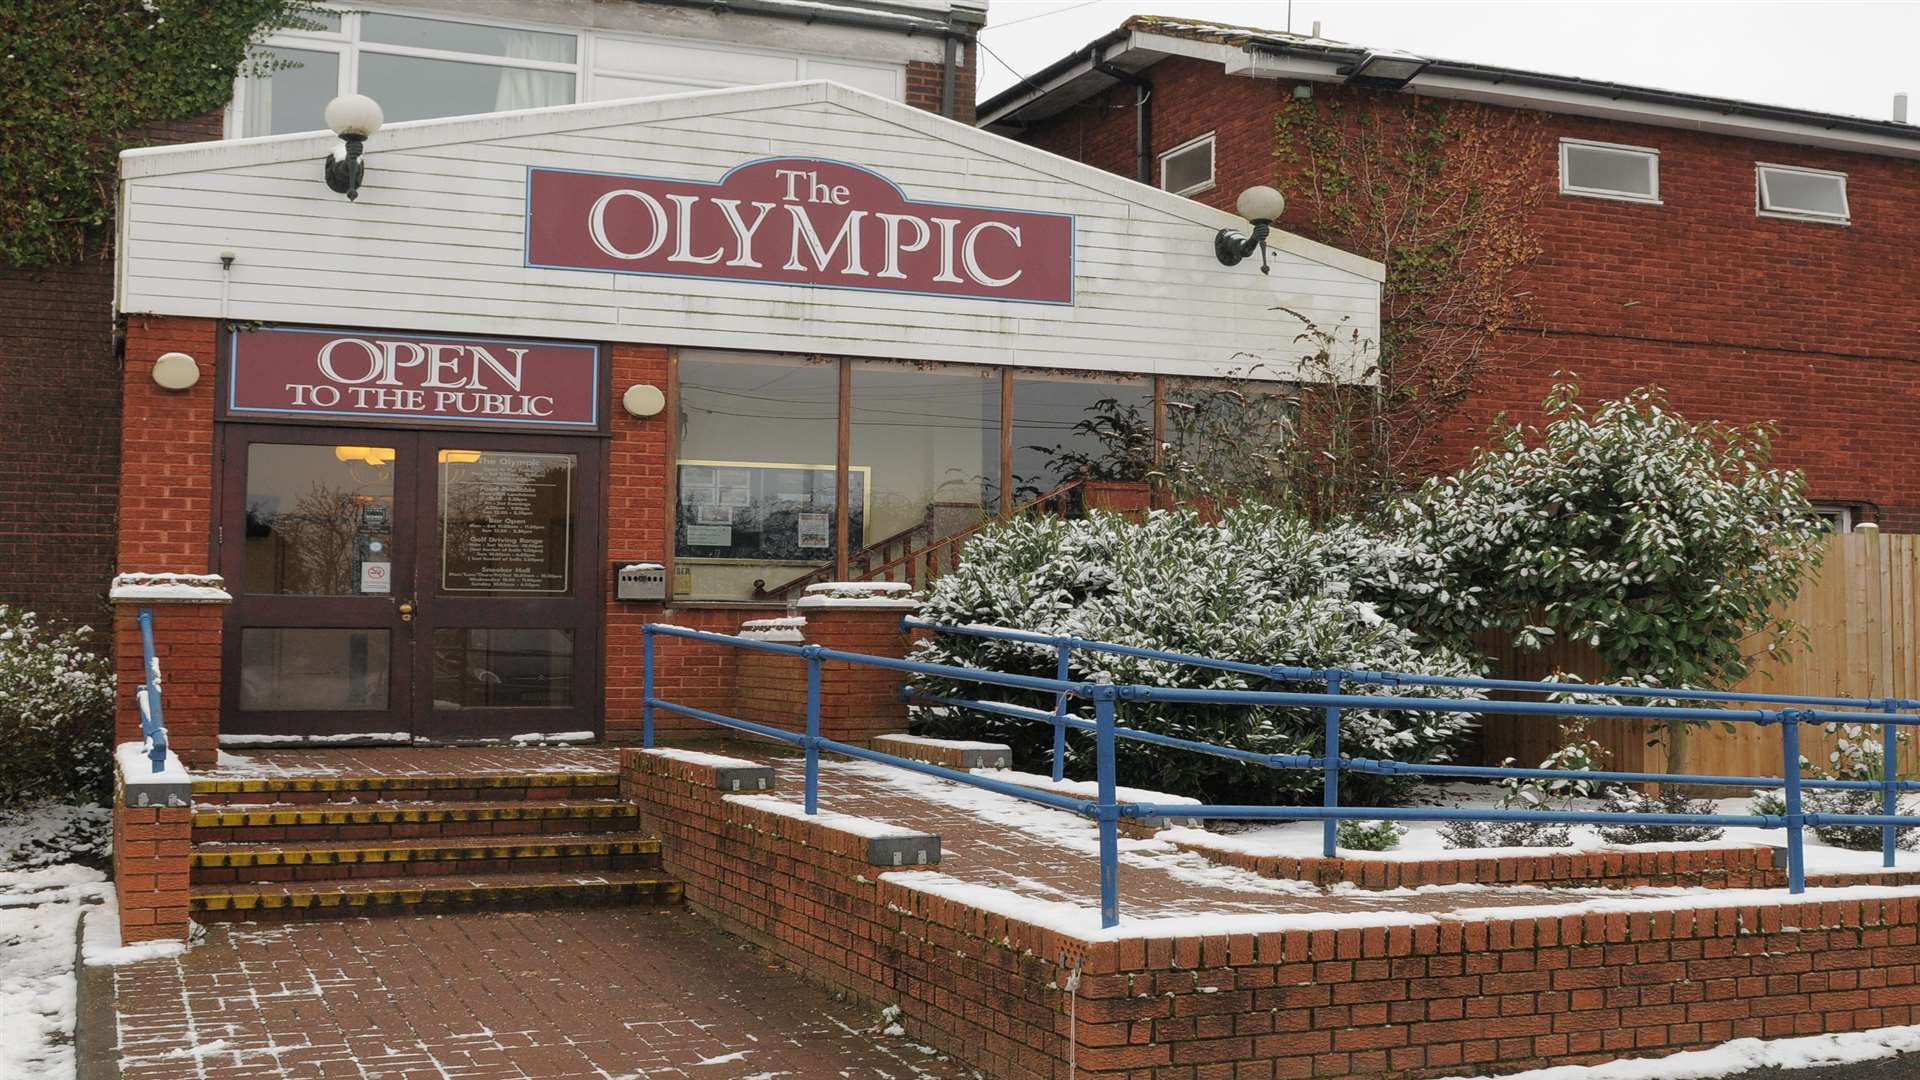 The Olympic, Beechenlea Lane, Swanley.